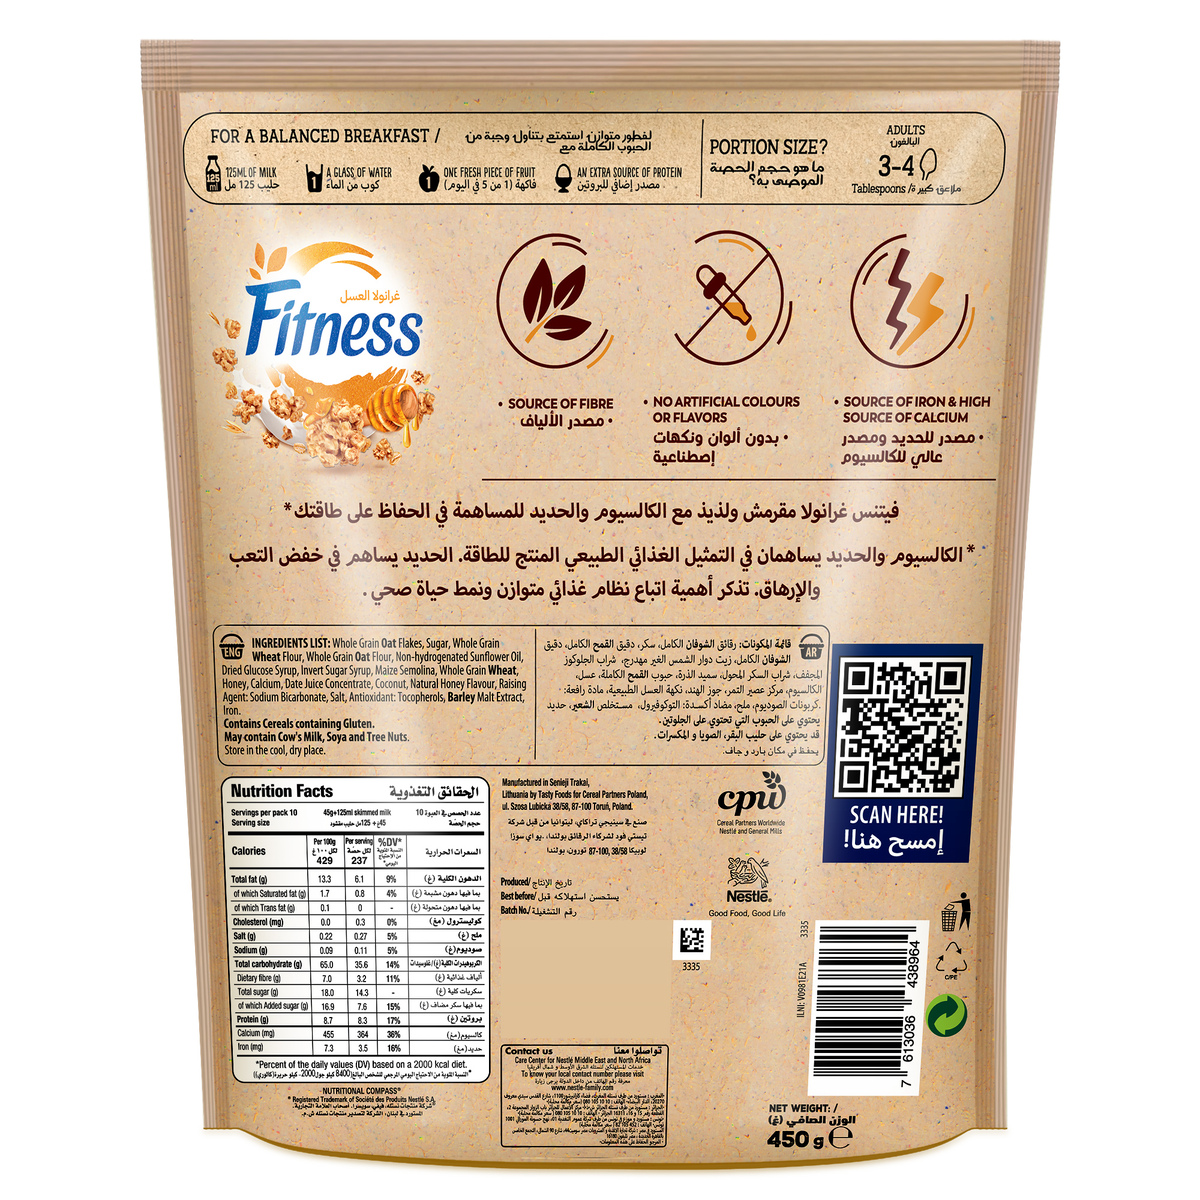 Nestle Fitness Granola Honey Cereal Bag 2 x 450 g